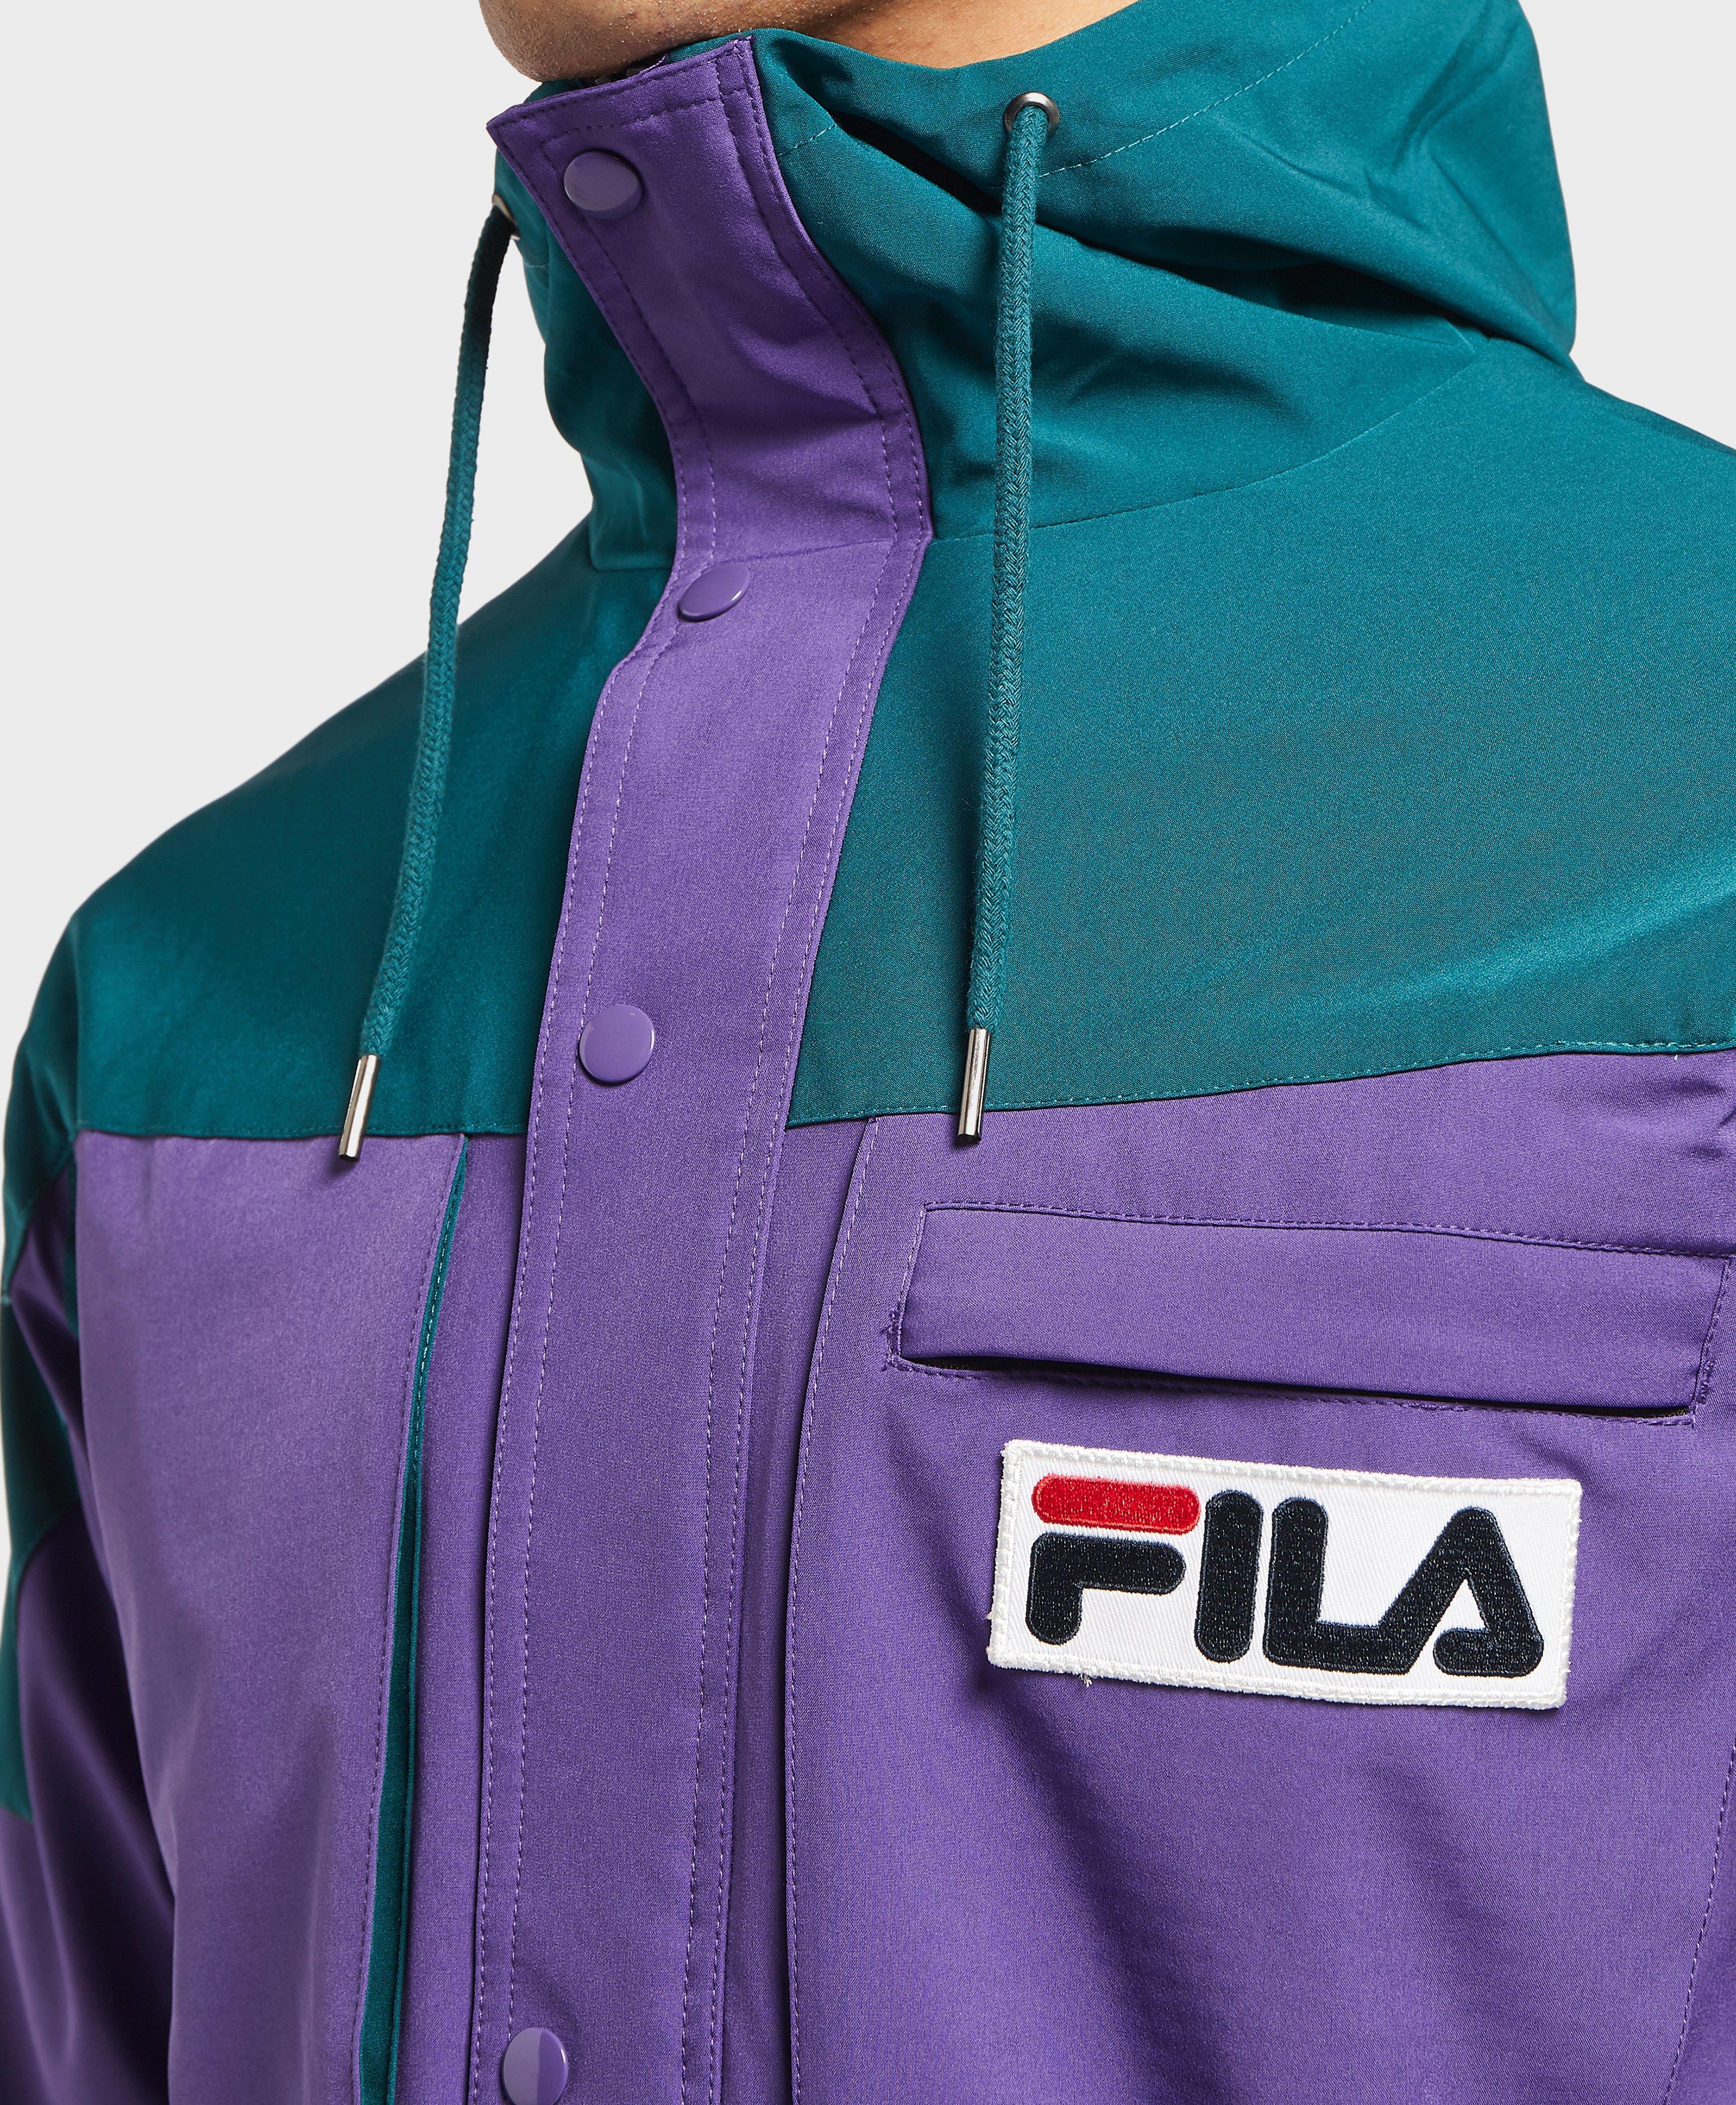 fila purple jacket